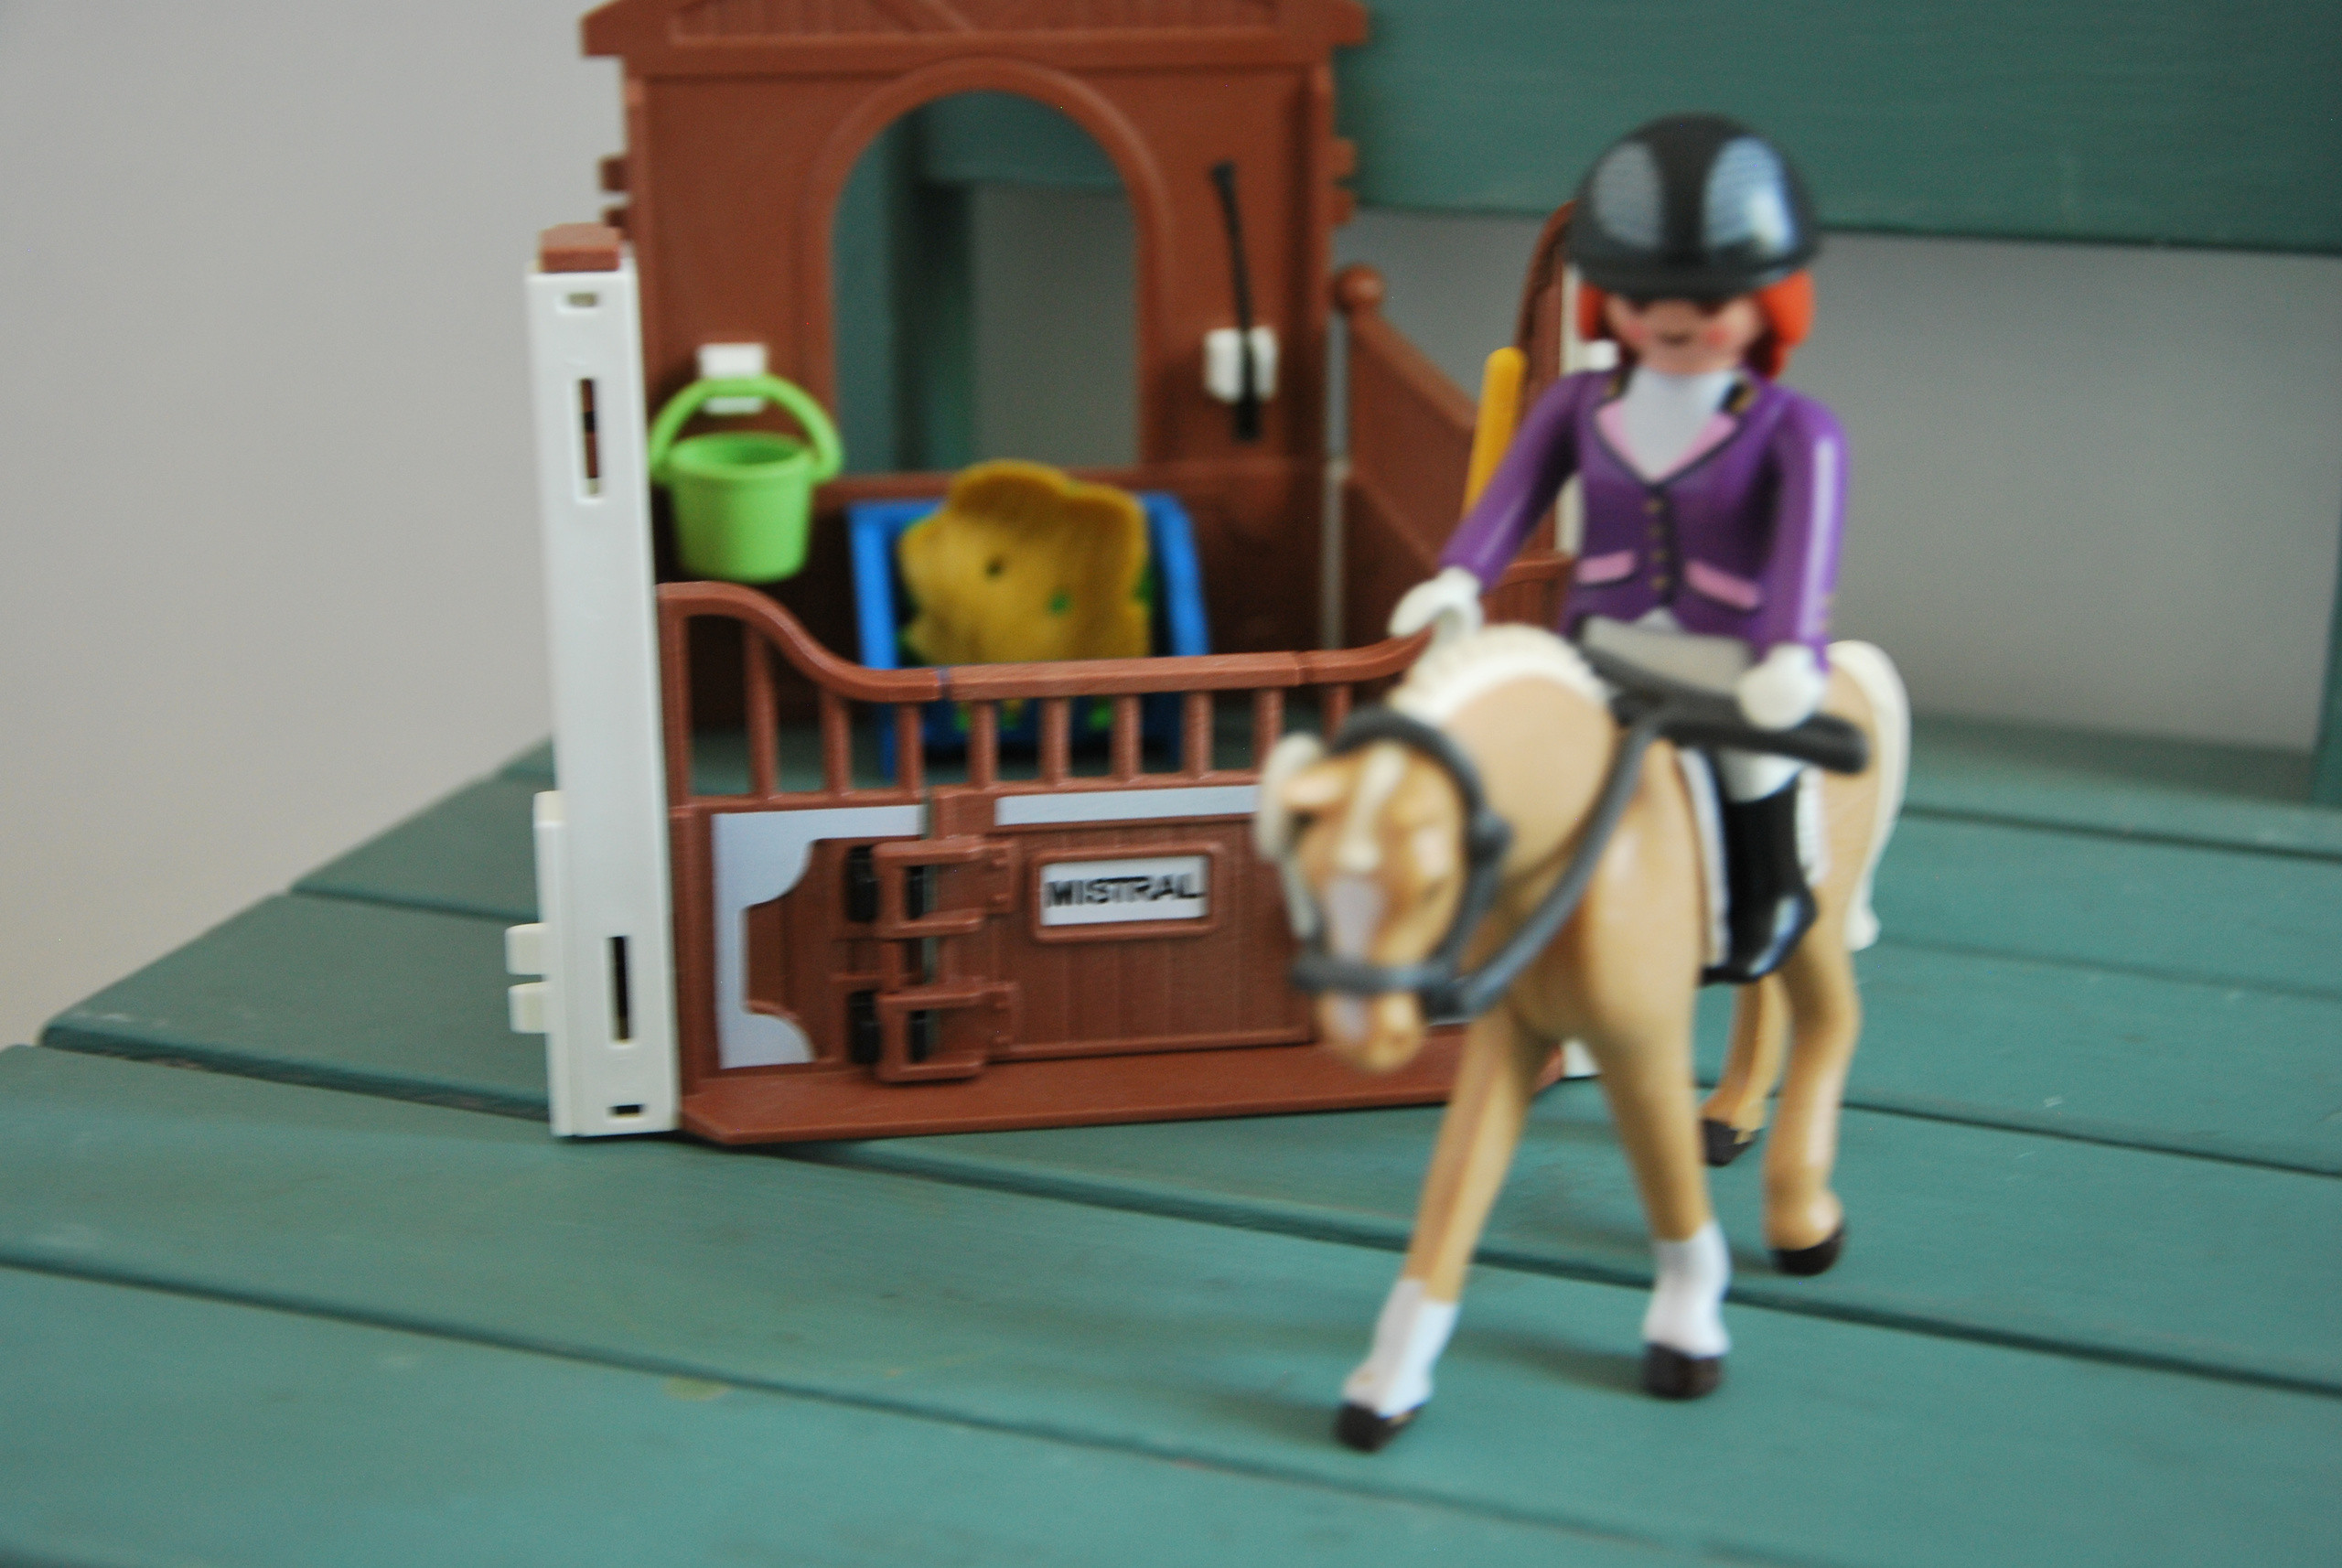 Playmobil box à chevaux - Playmobil